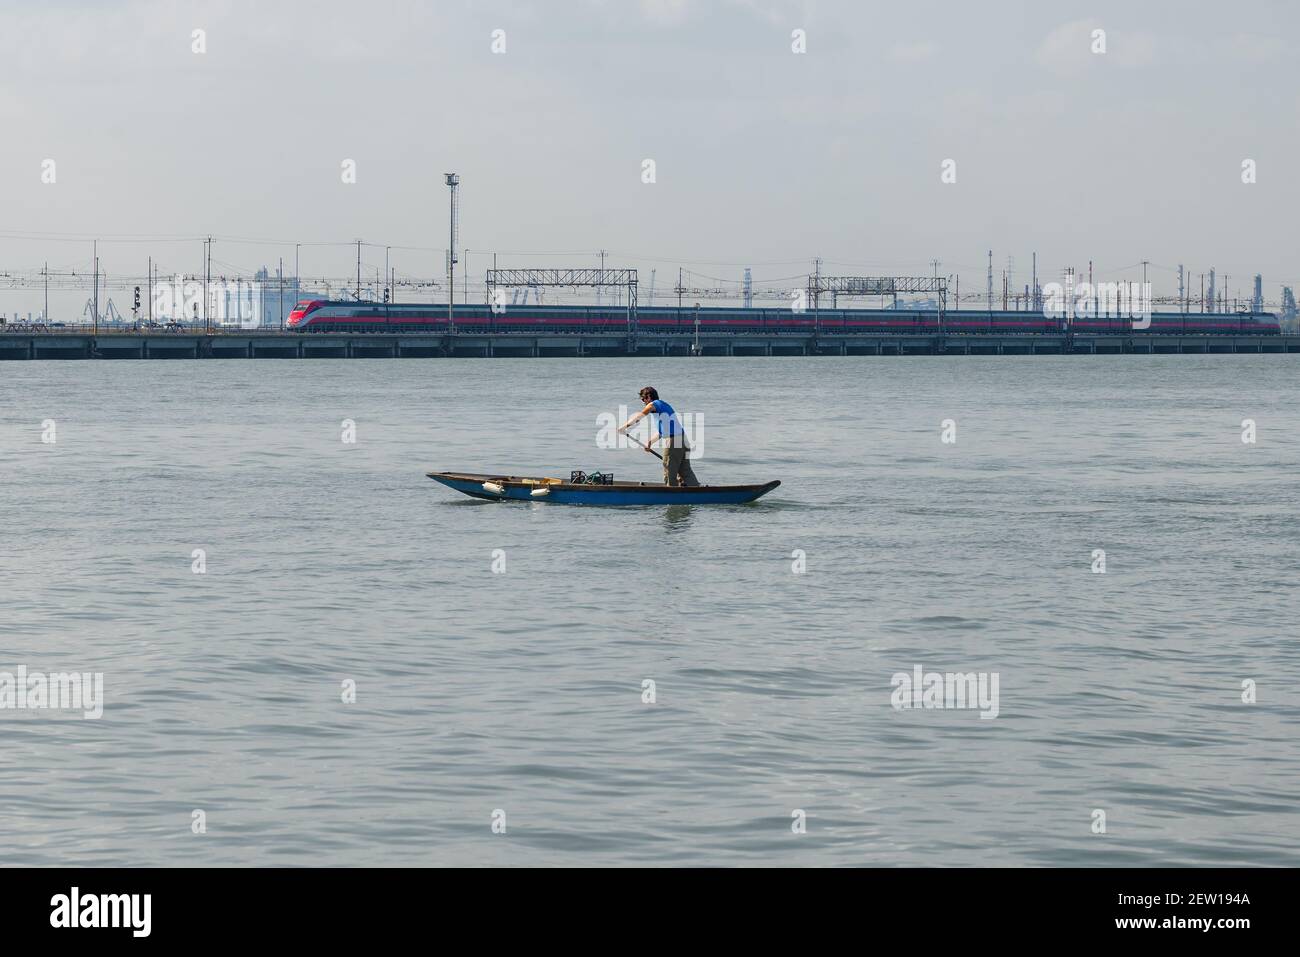 VENEDIG, ITALIEN - 27. SEPTEMBER 2017: Ein Mann ruht auf einem alten Holzboot vor dem Hintergrund eines Hochgeschwindigkeitszuges. Lagune Von Venedig Stockfoto